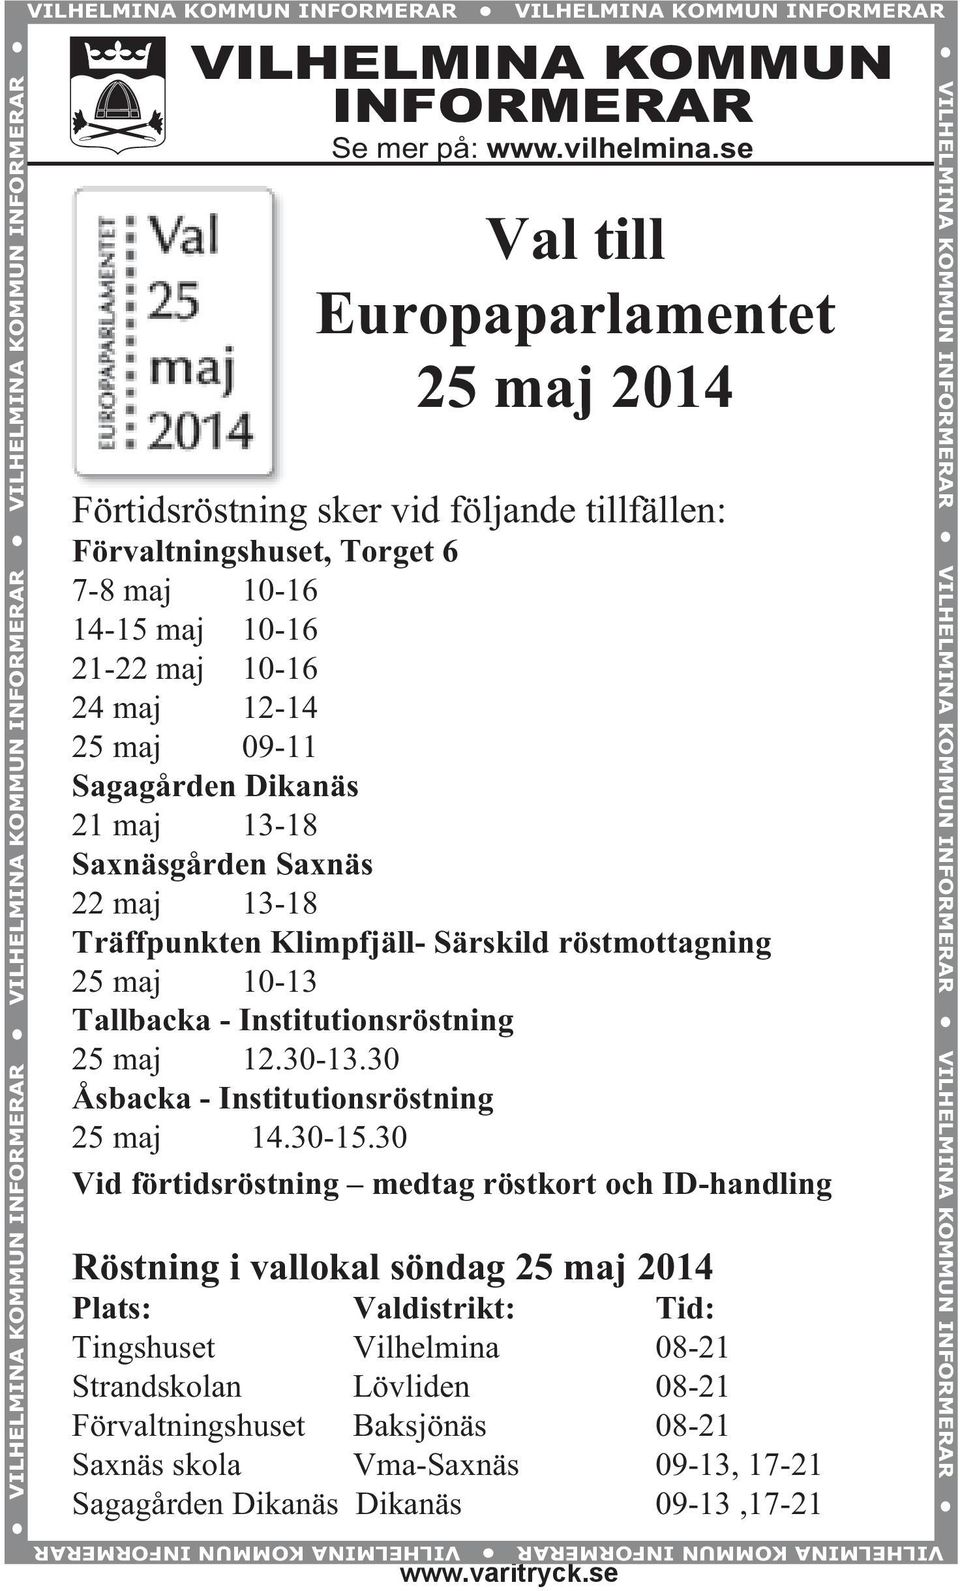 Dikanäs 21 maj 13-18 Saxnäsgården Saxnäs 22 maj 13-18 Träffpunkten Klimpfjäll- Särskild röstmottagning 25 maj 10-13 Tallbacka - Institutionsröstning 25 maj 12.30-13.